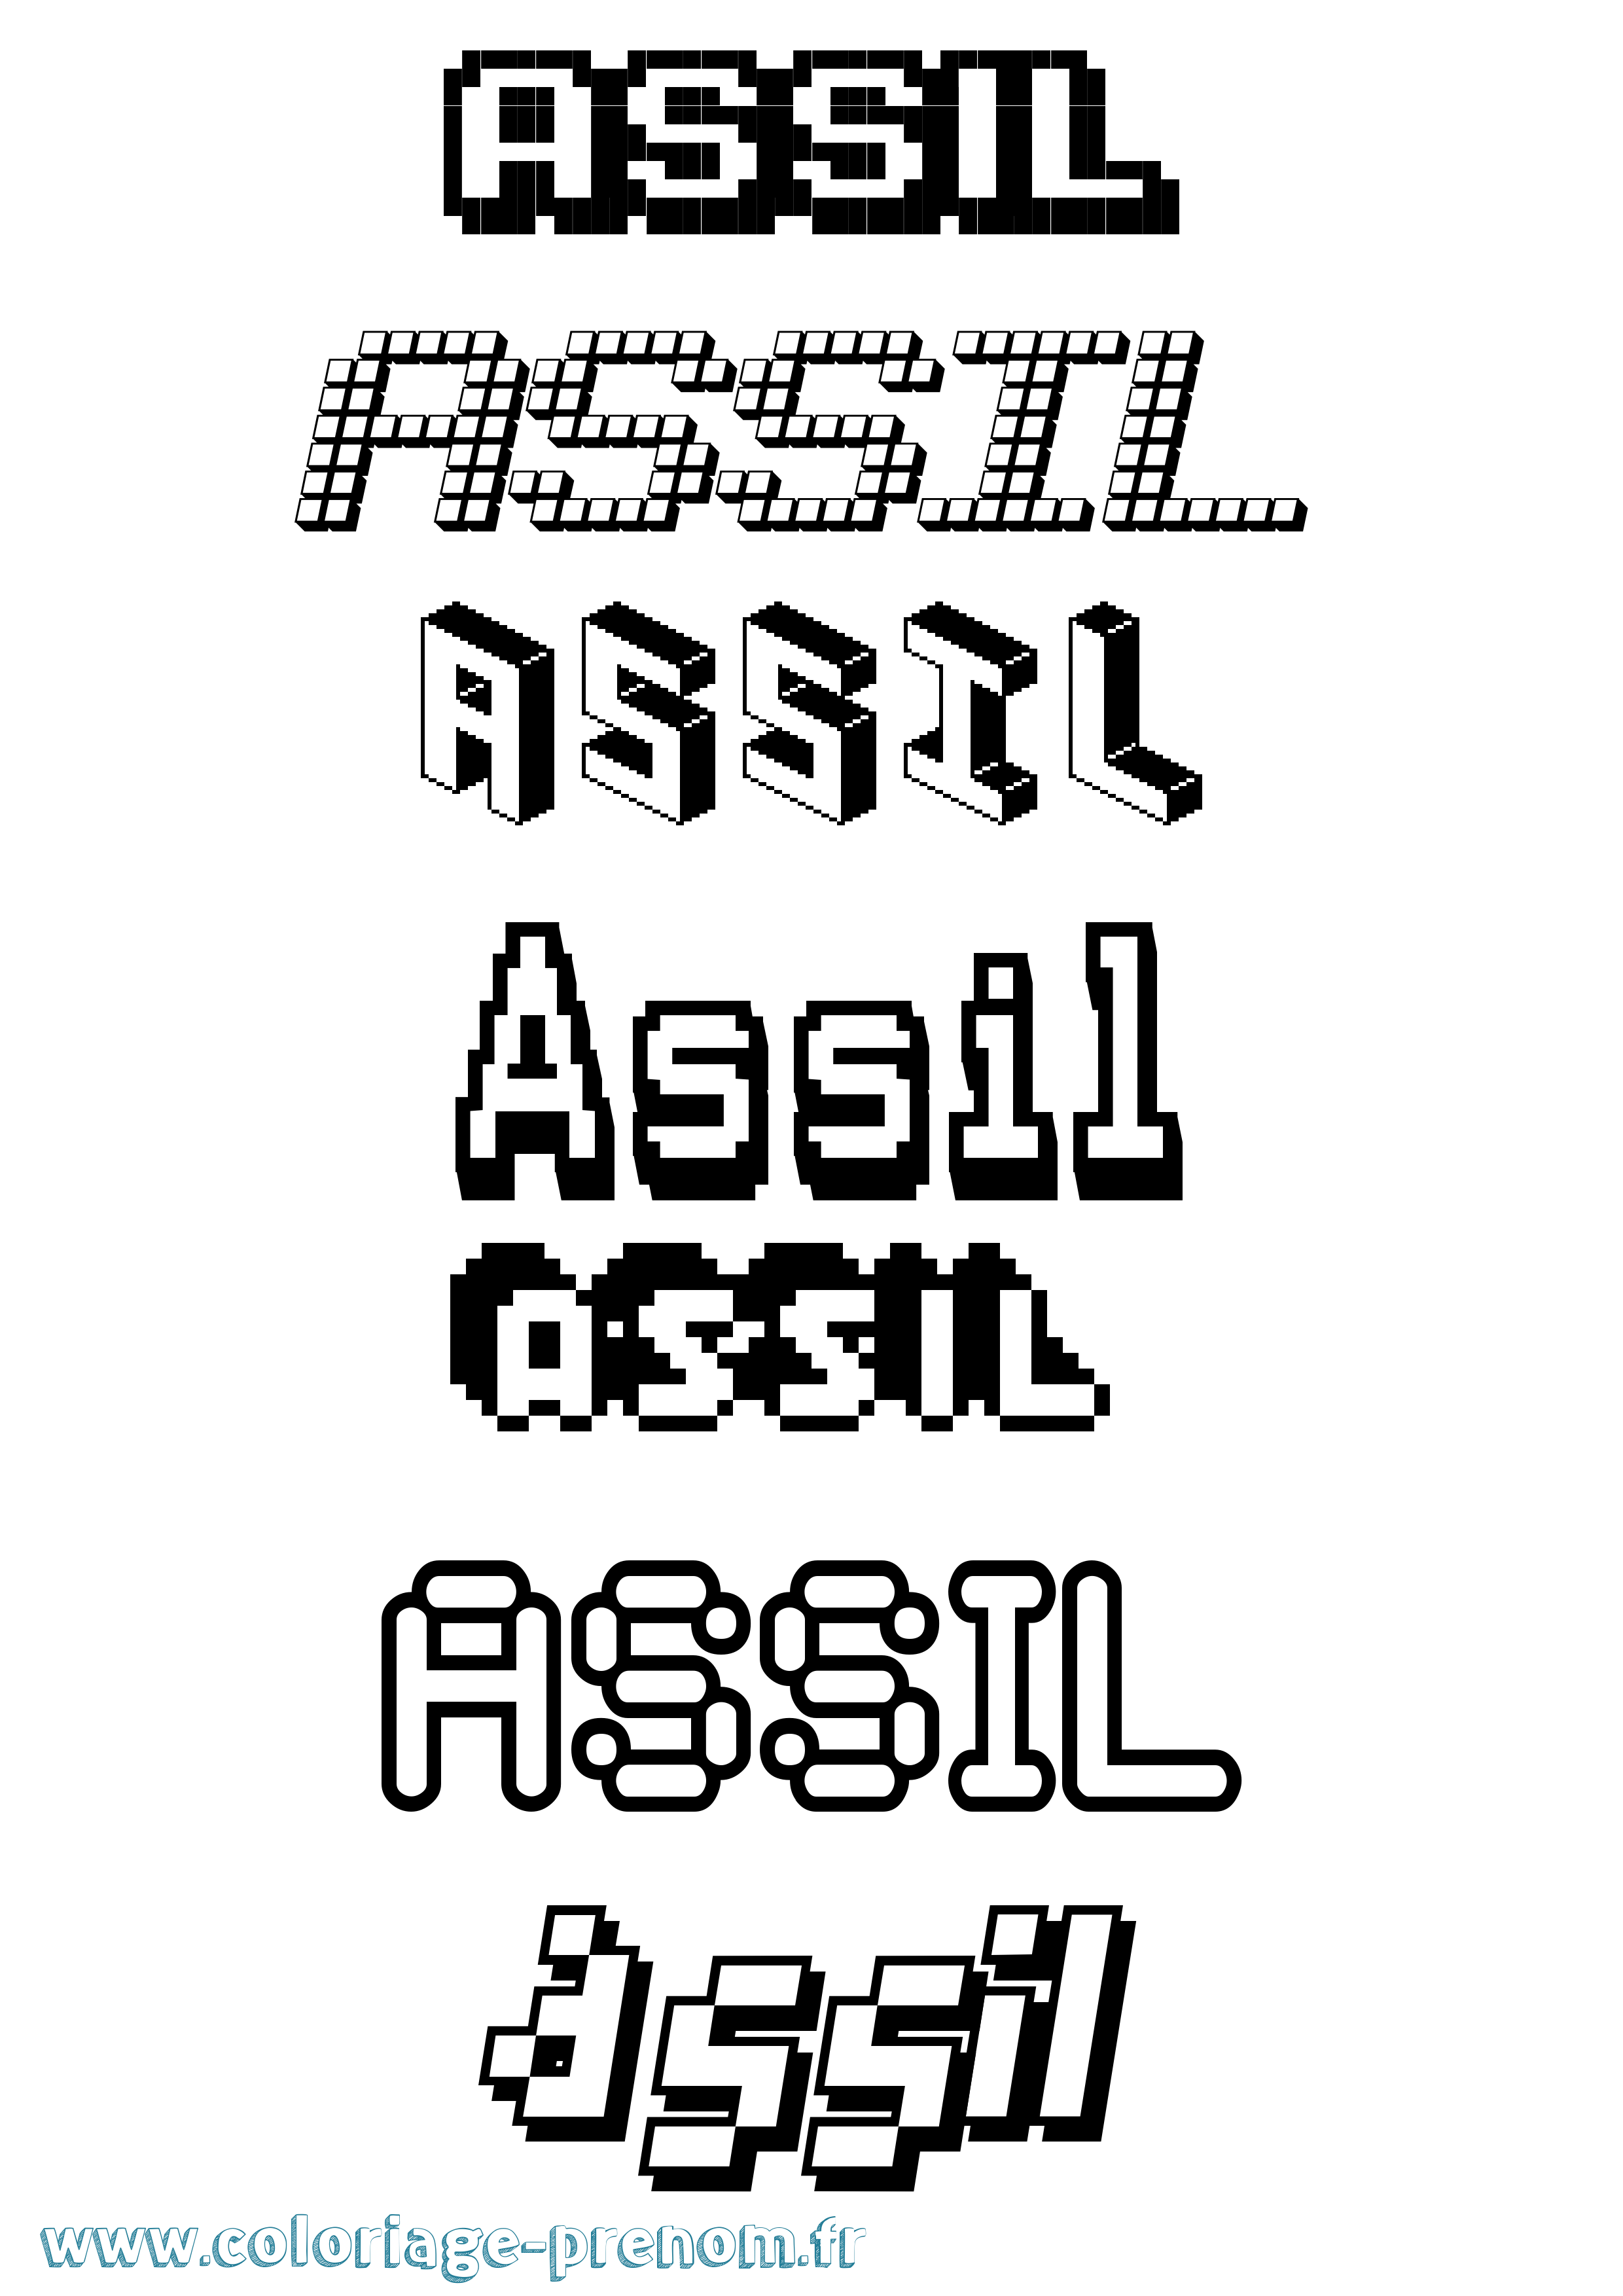 Coloriage prénom Assil